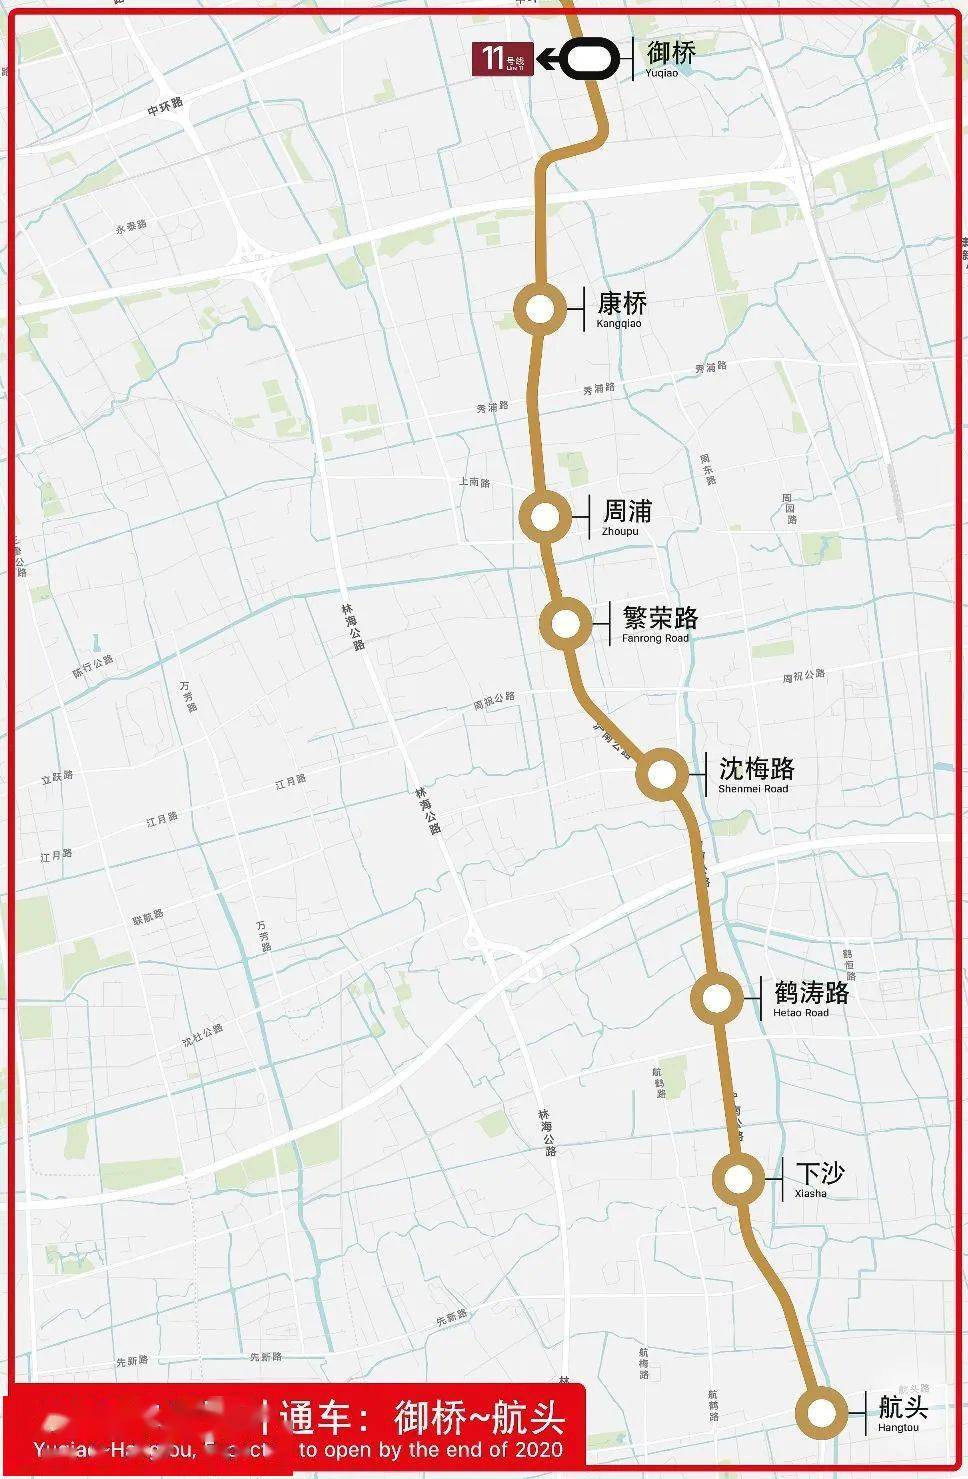 新开3条地铁线增设100个出租车候客站点上海人今年你的交通出行这样